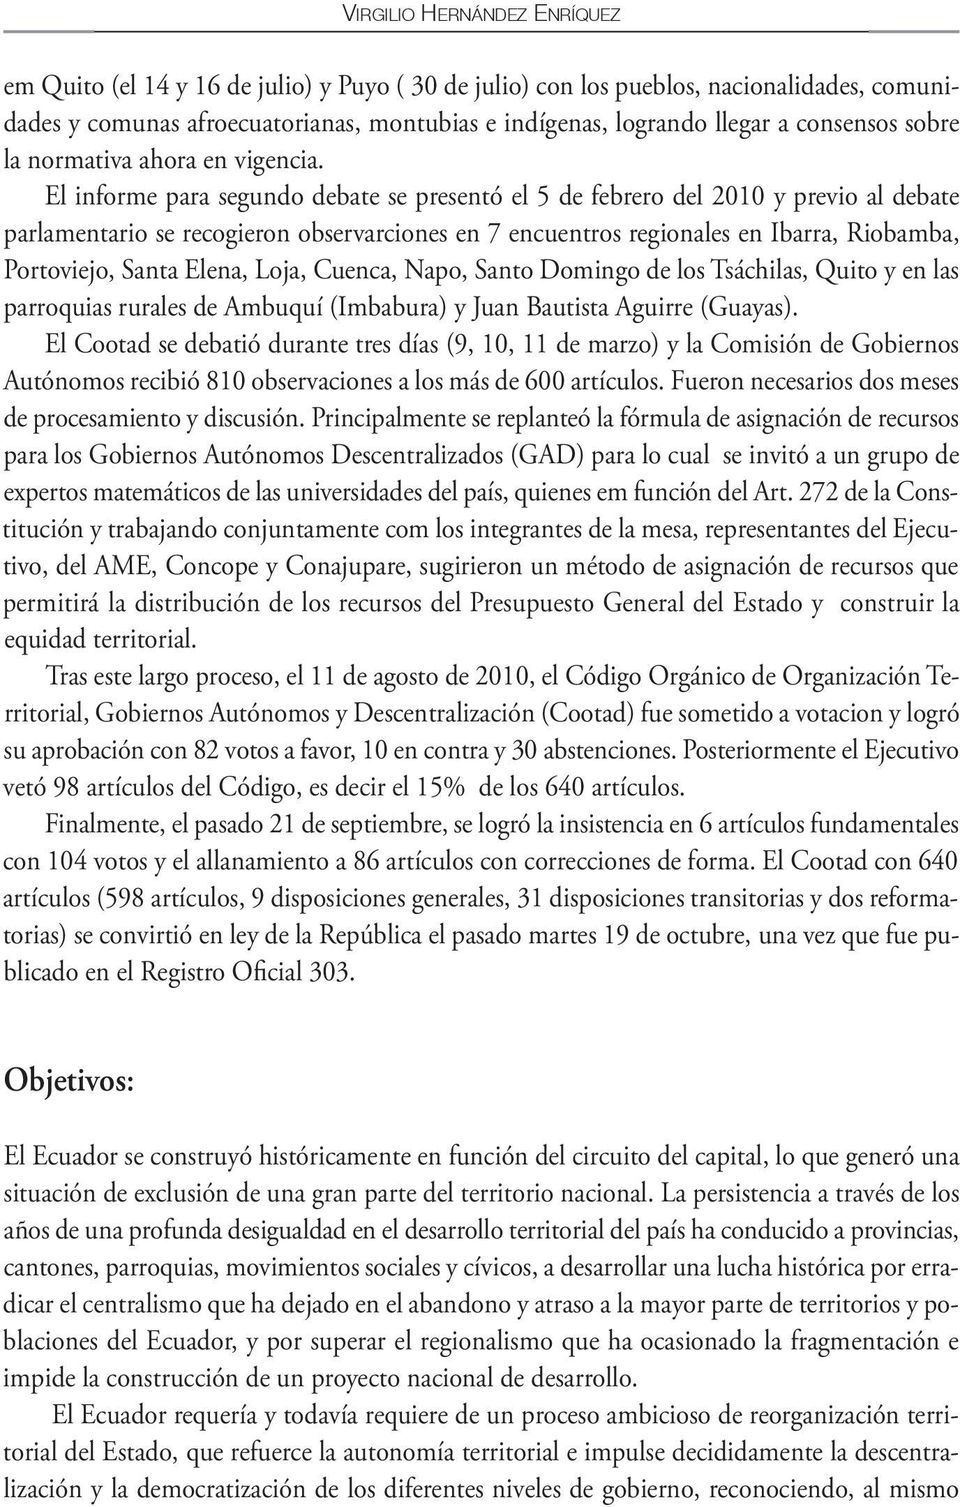 El informe para segundo debate se presentó el 5 de febrero del 2010 y previo al debate parlamentario se recogieron observarciones en 7 encuentros regionales en Ibarra, Riobamba, Portoviejo, Santa